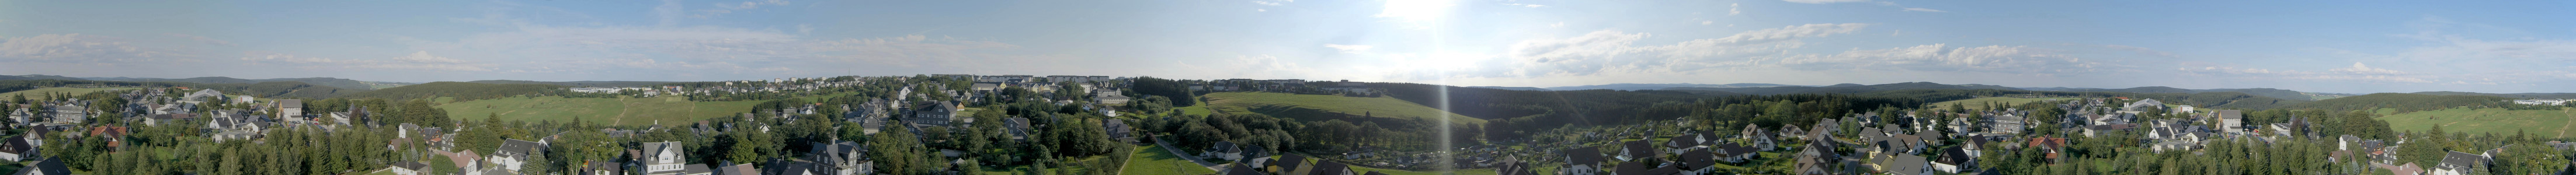 Panorama Neuhaus am Rennweg